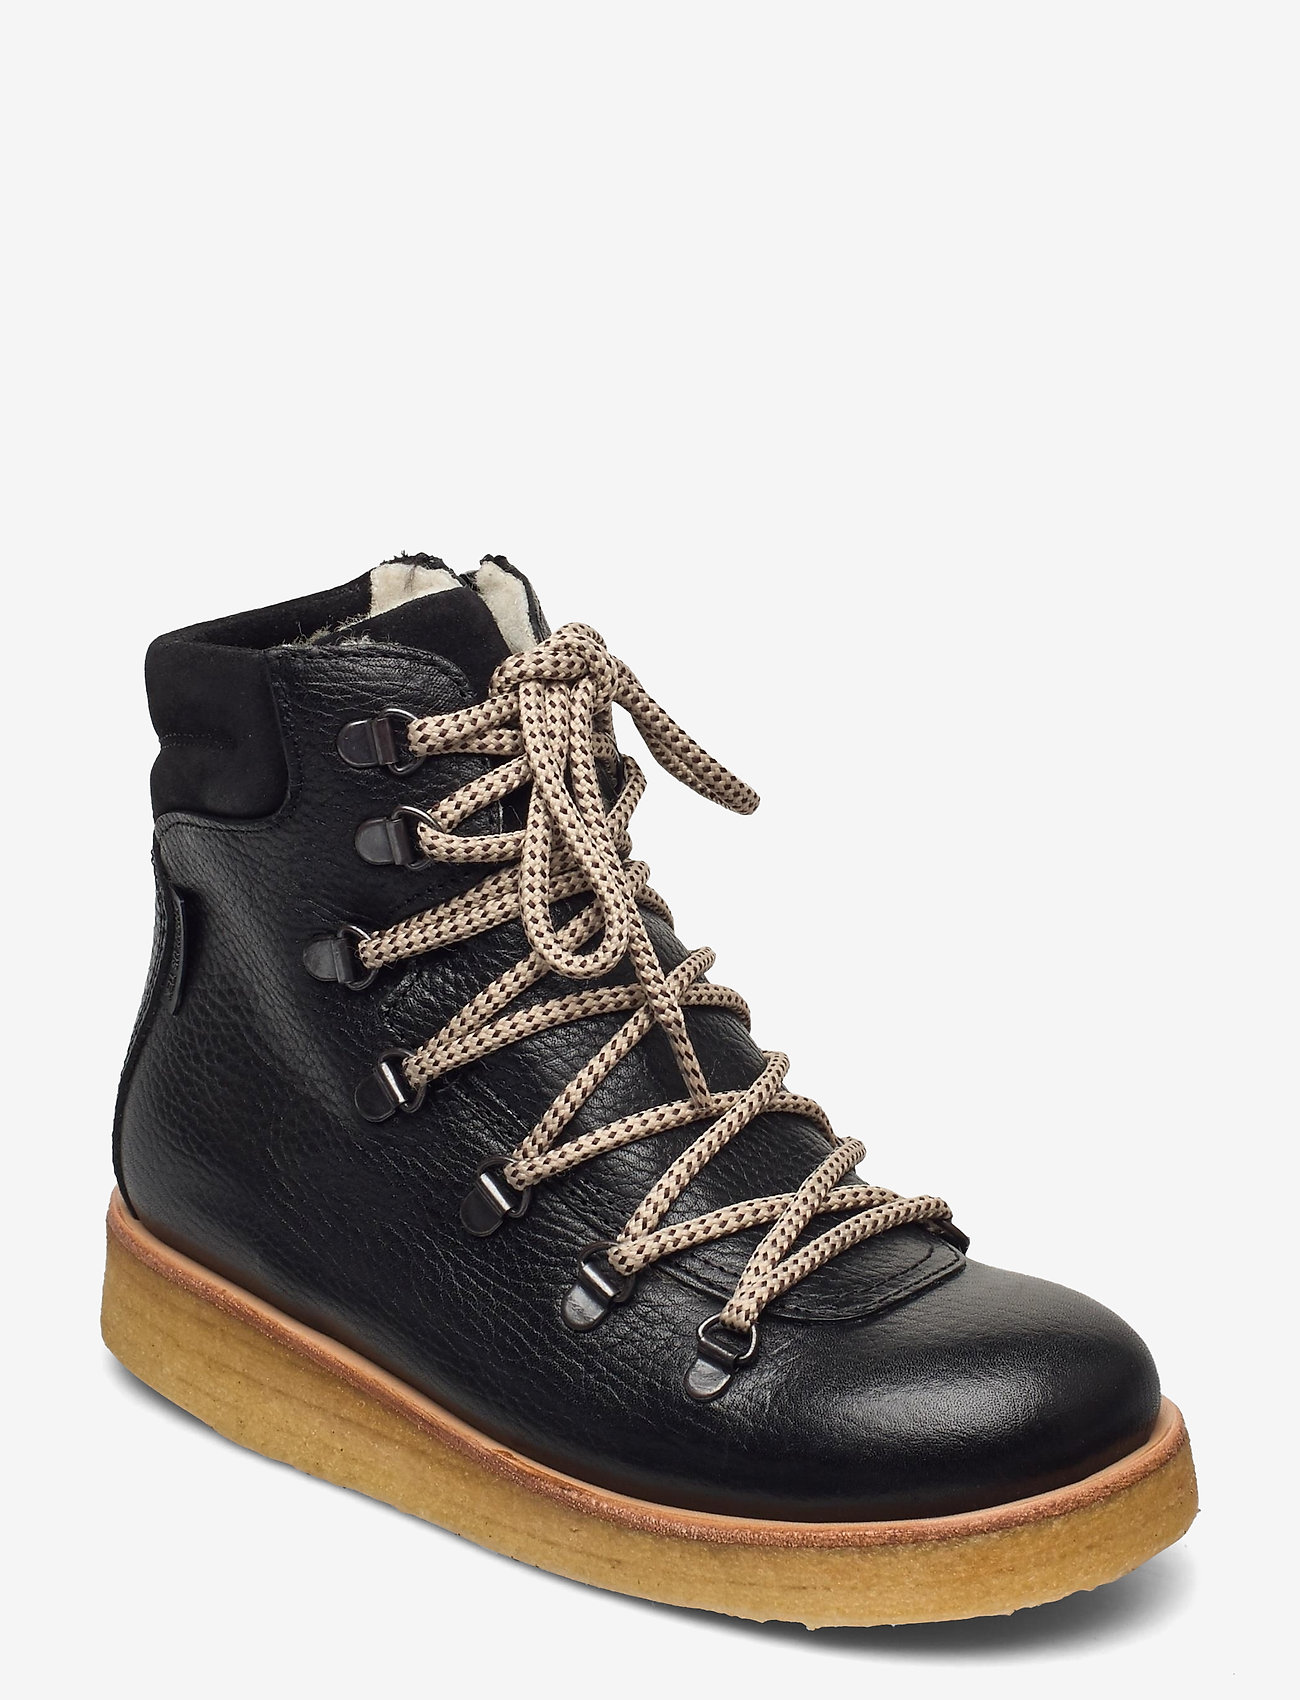 ANGULUS - Boots - flat - vinterstøvler - 2504/1163/1652 black - 0